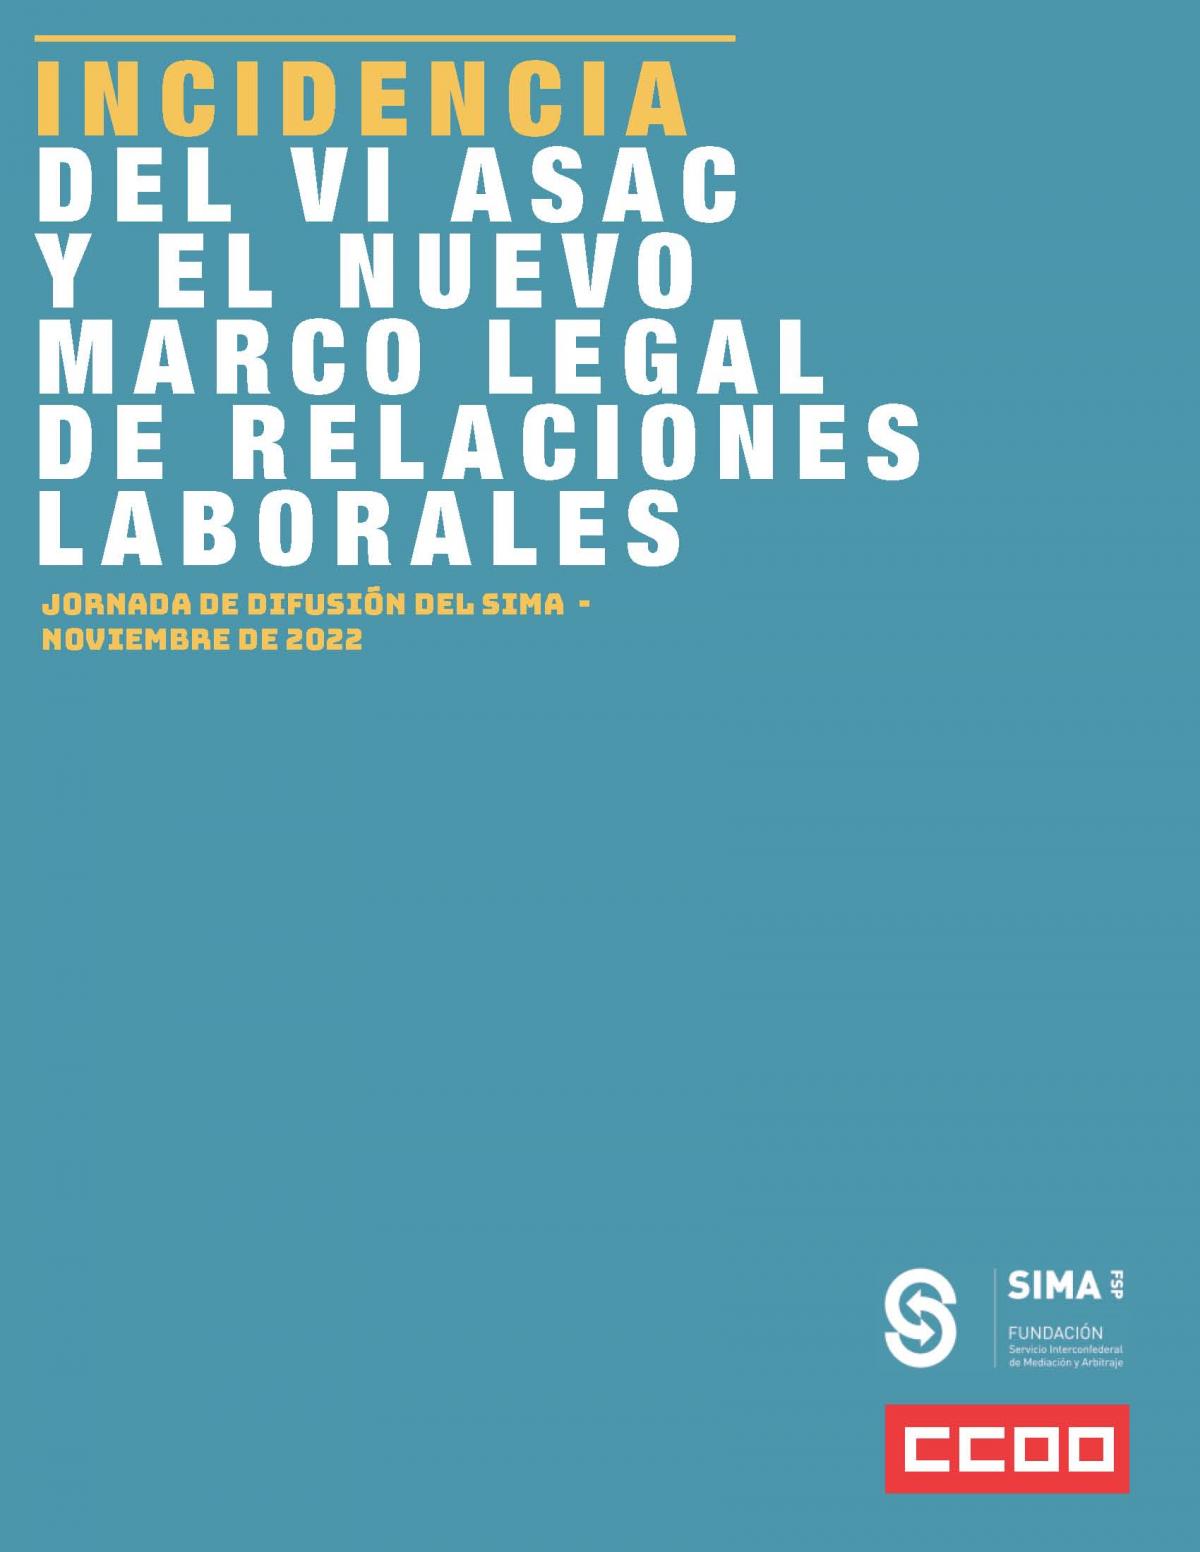 Jornada de difusión del SIMA “Incidencia del VI ASAC y el nuevo marco laboral de relación laborales”.